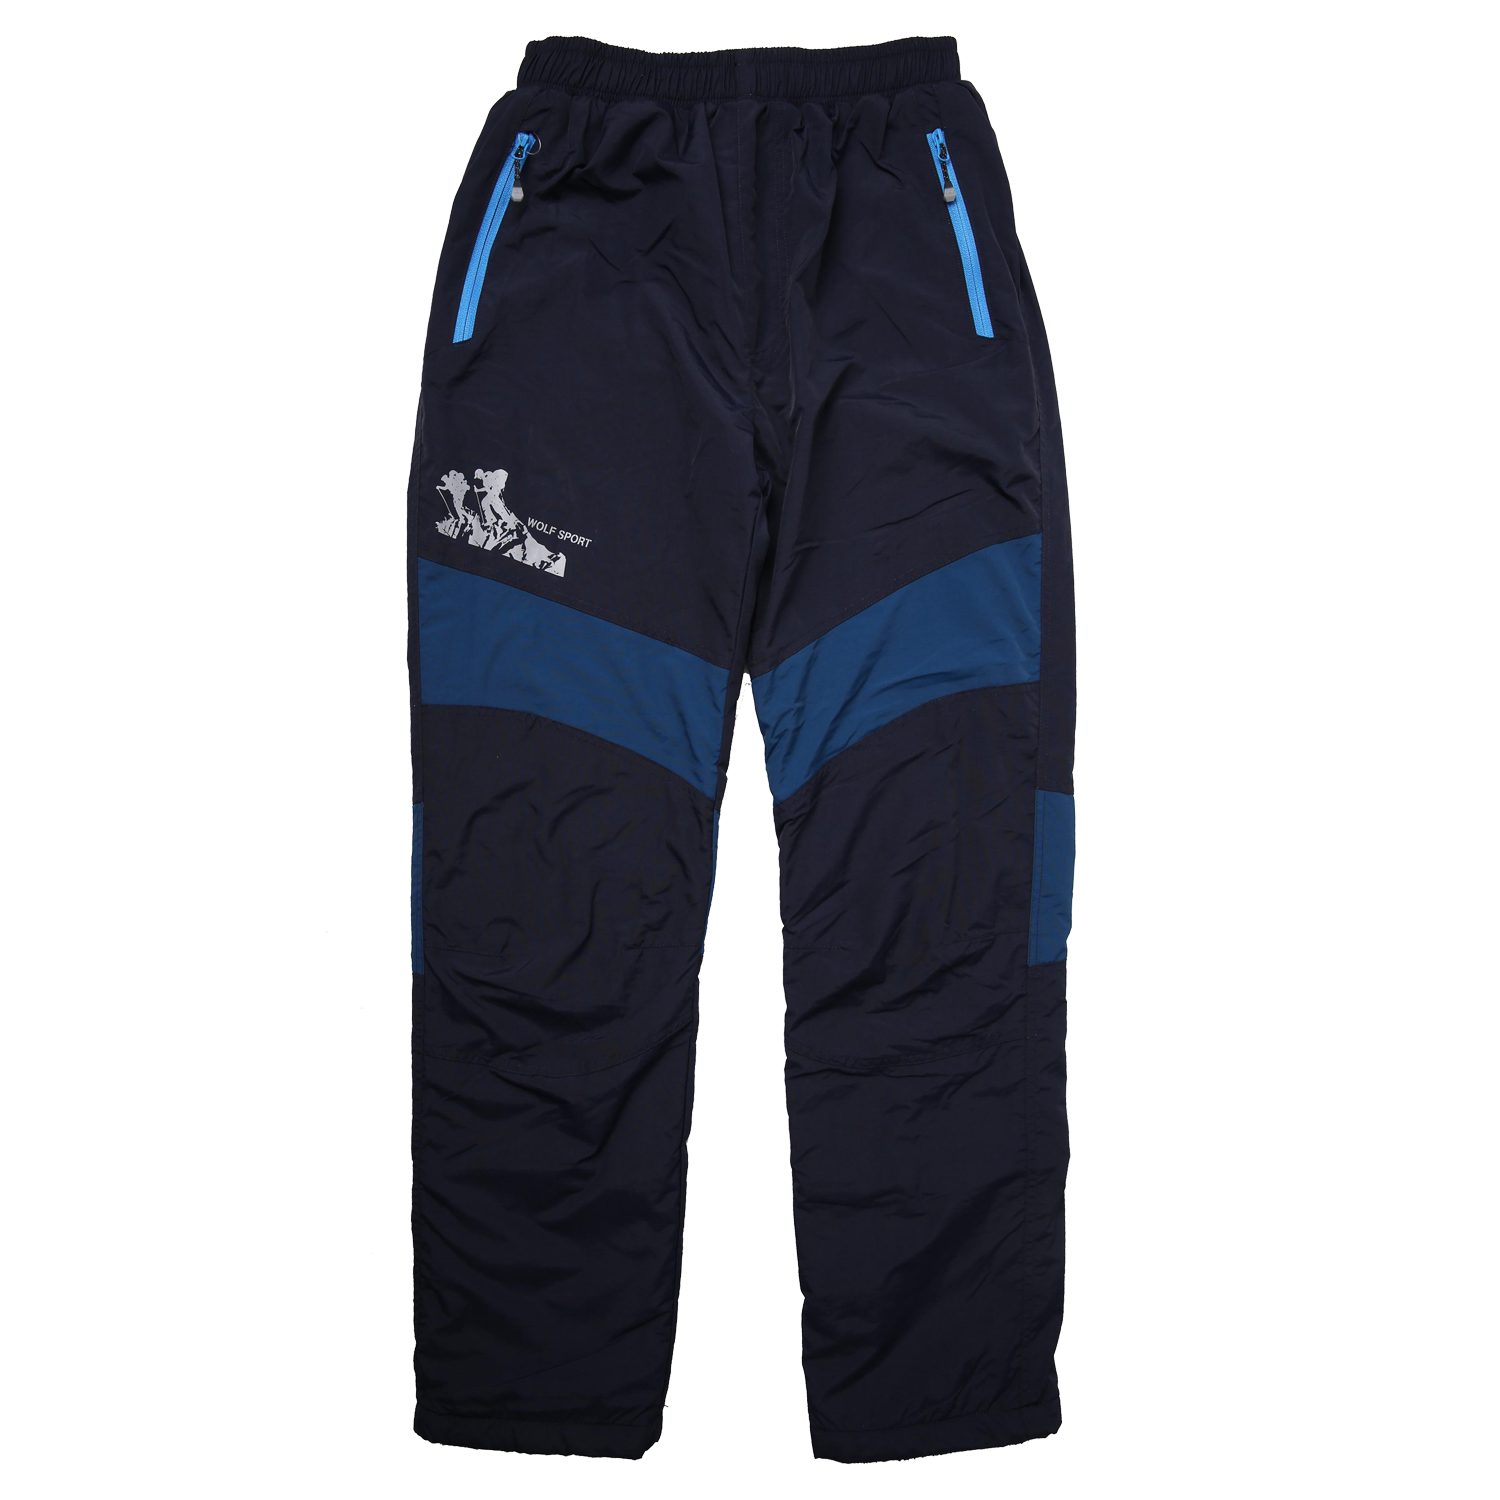 Chlapecké šusťákové kalhoty, zateplené - Wolf B2274, tmavě modrá/ petrol Barva: Modrá tmavě, Velikost: 164